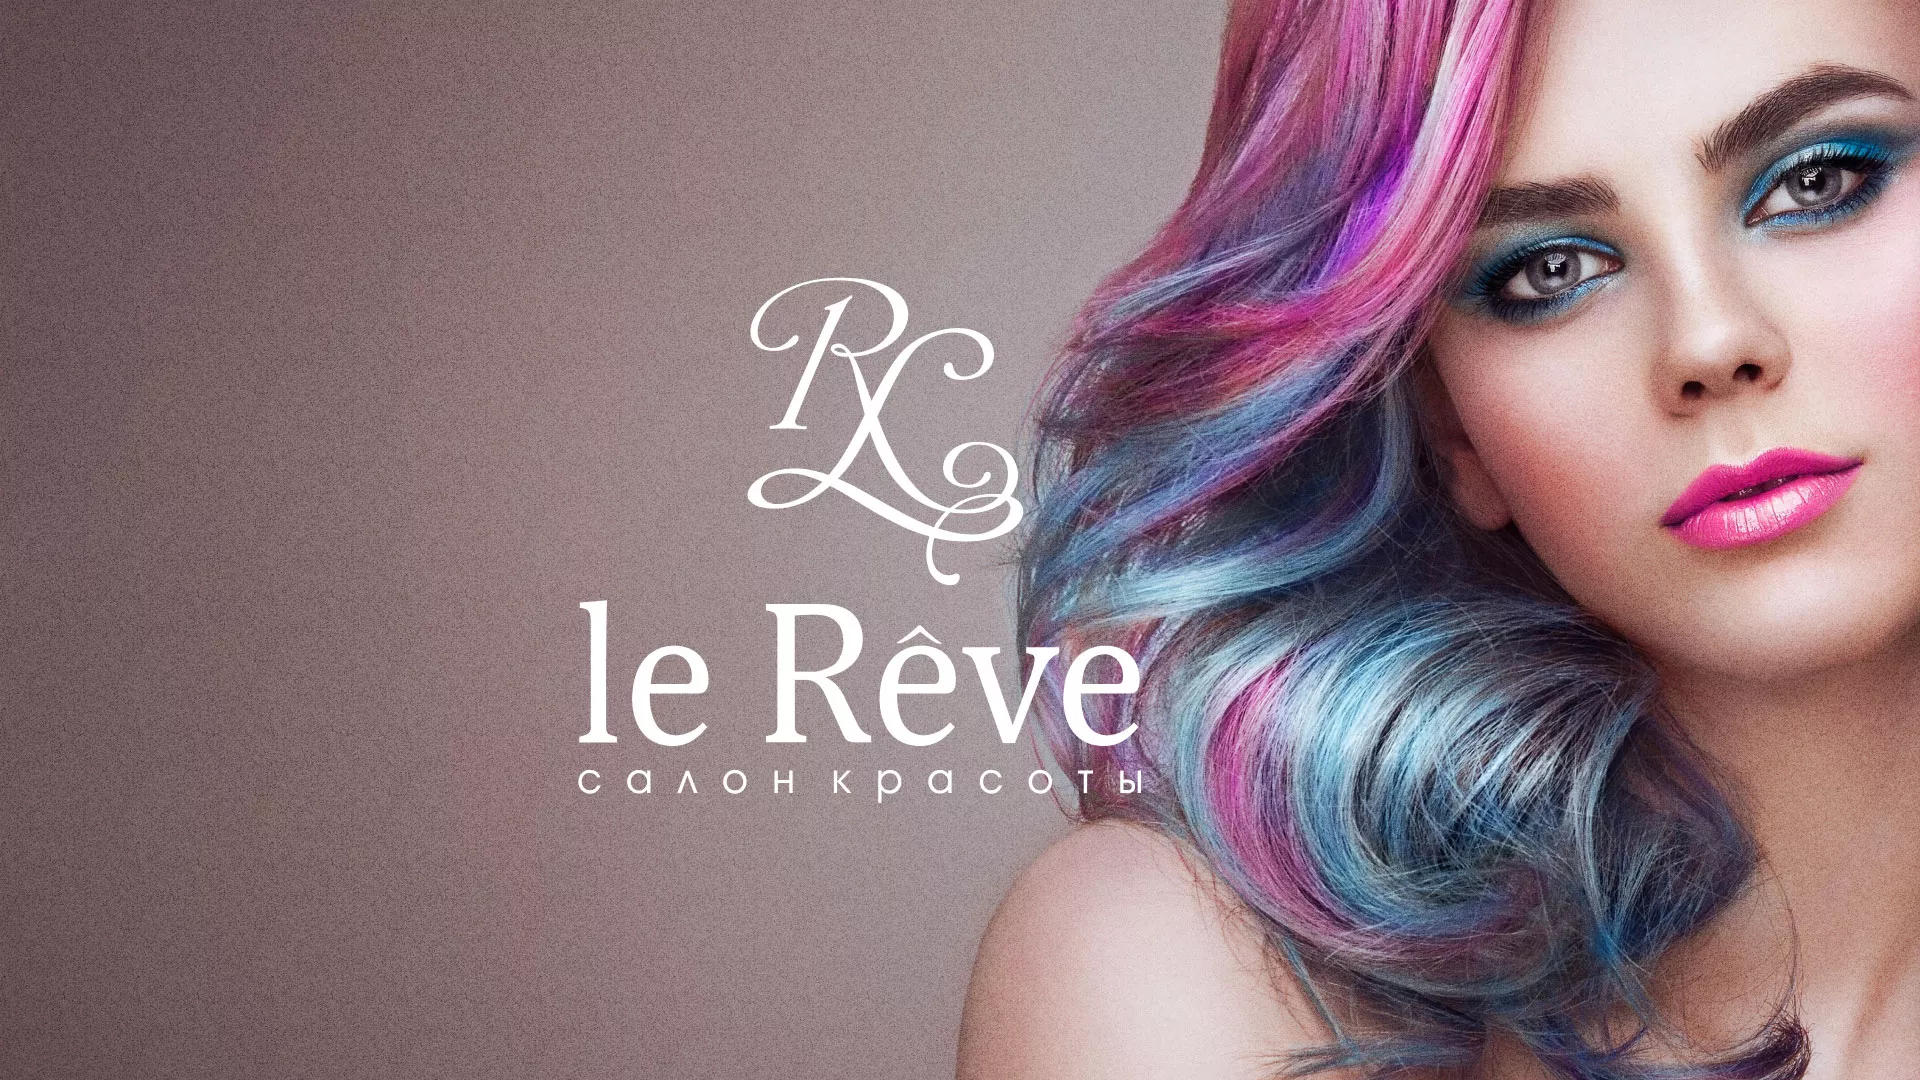 Создание сайта для салона красоты «Le Reve» в Фурманове